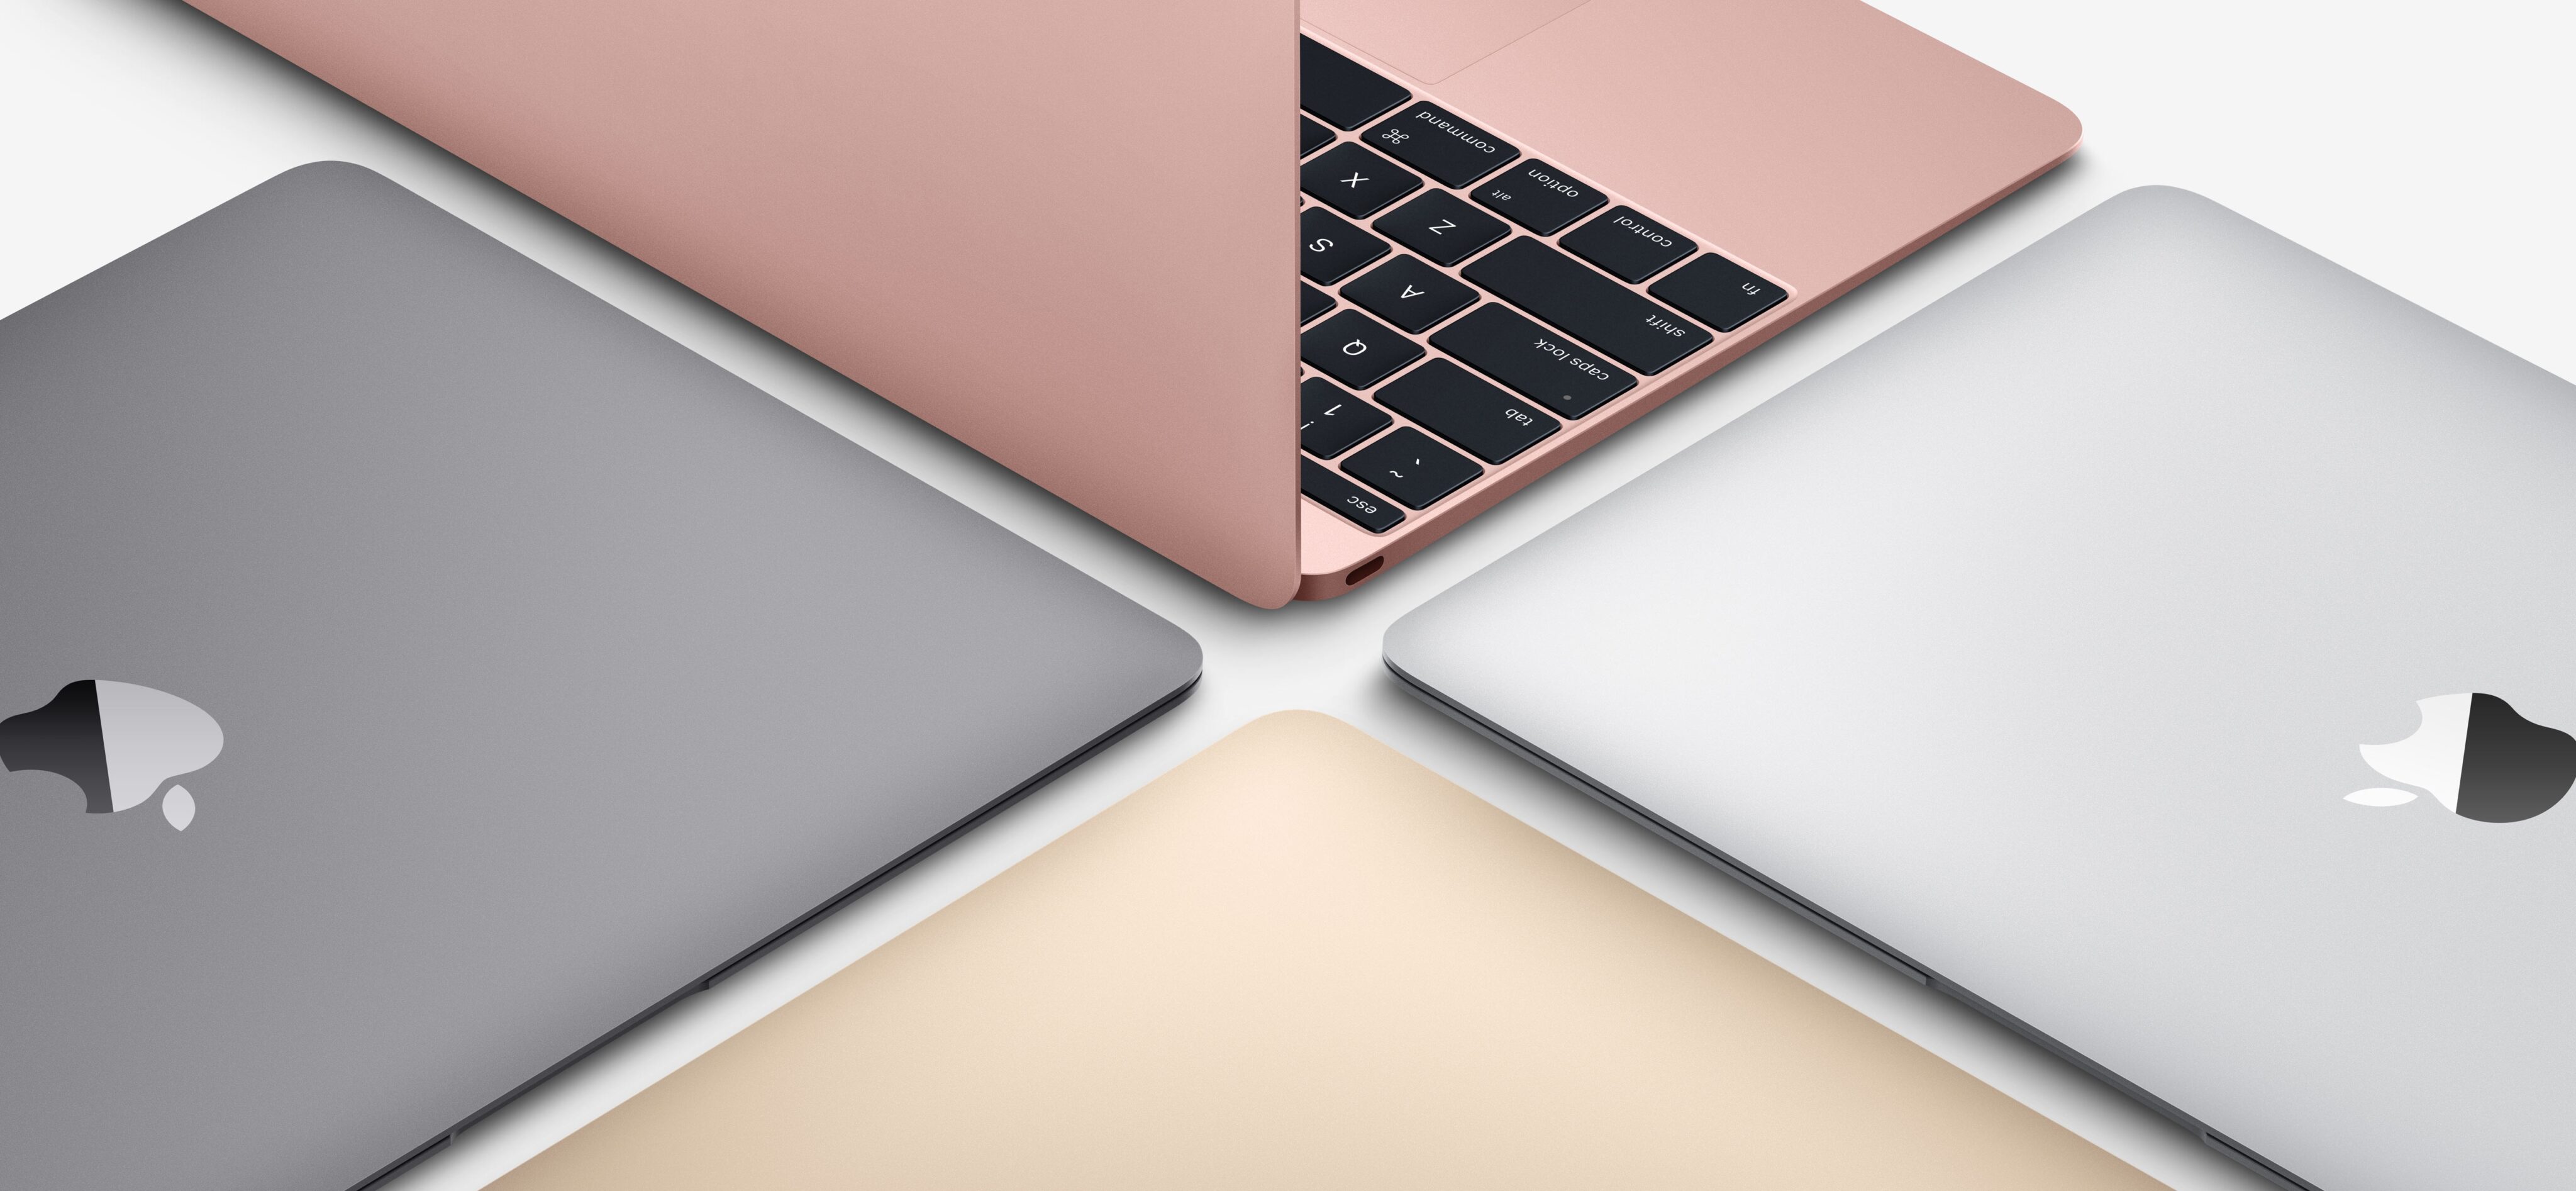 As quatro cores do MacBook com tela Retina de 12 polegadas